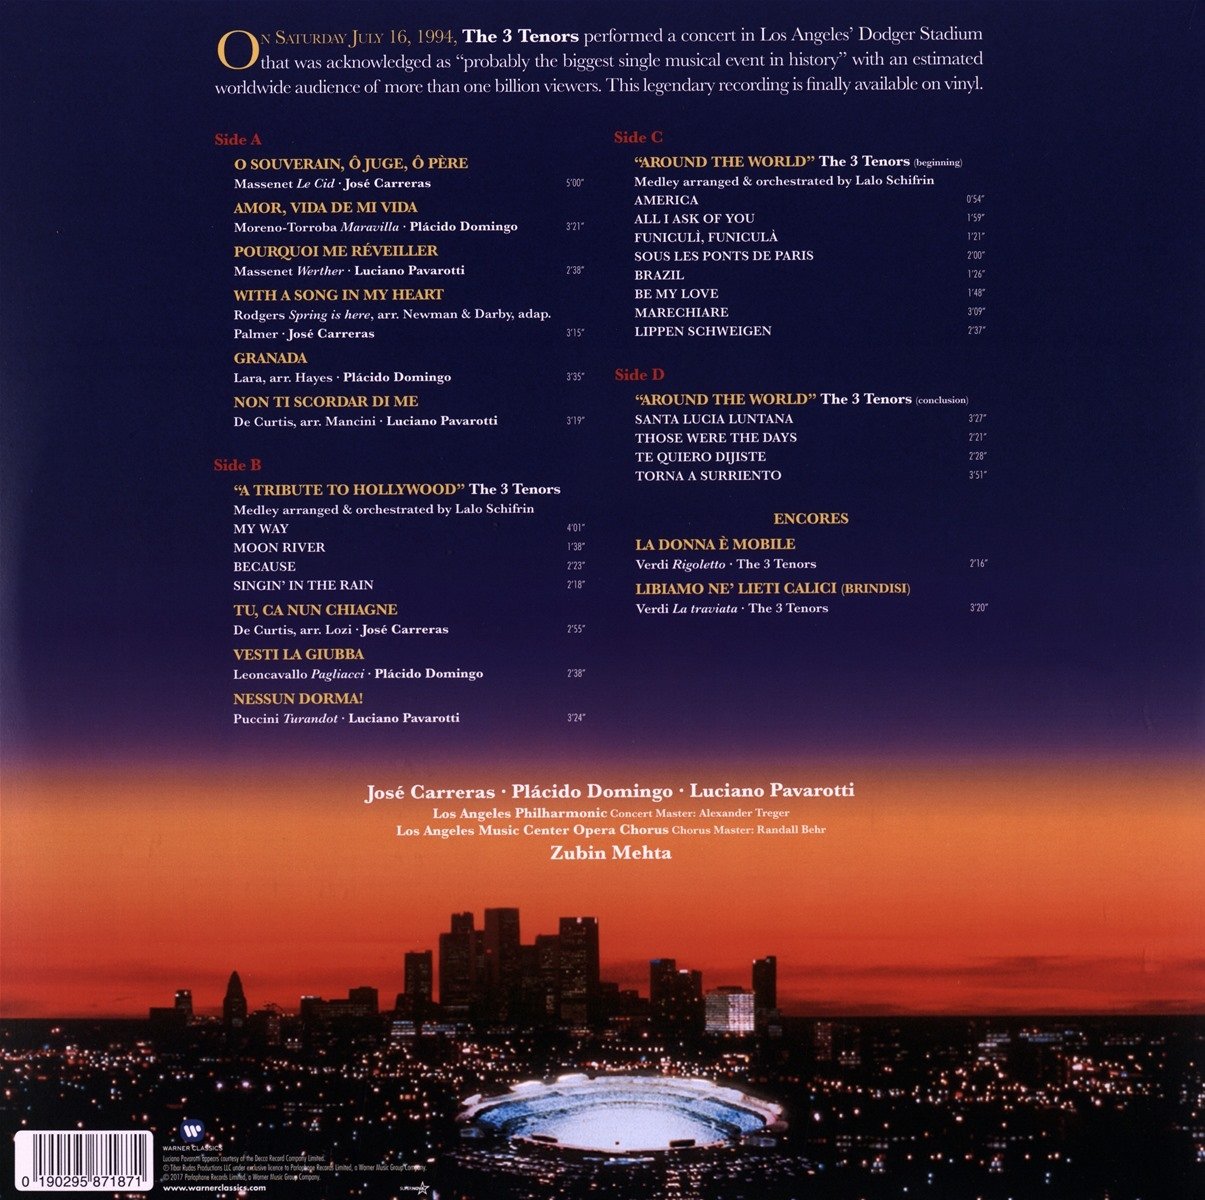 The 3 Tenors In Concert 1994 - Vinyl | Jose Carreras, Placido Domingo , Luciano Pavarotti , Zubin Metha  image1